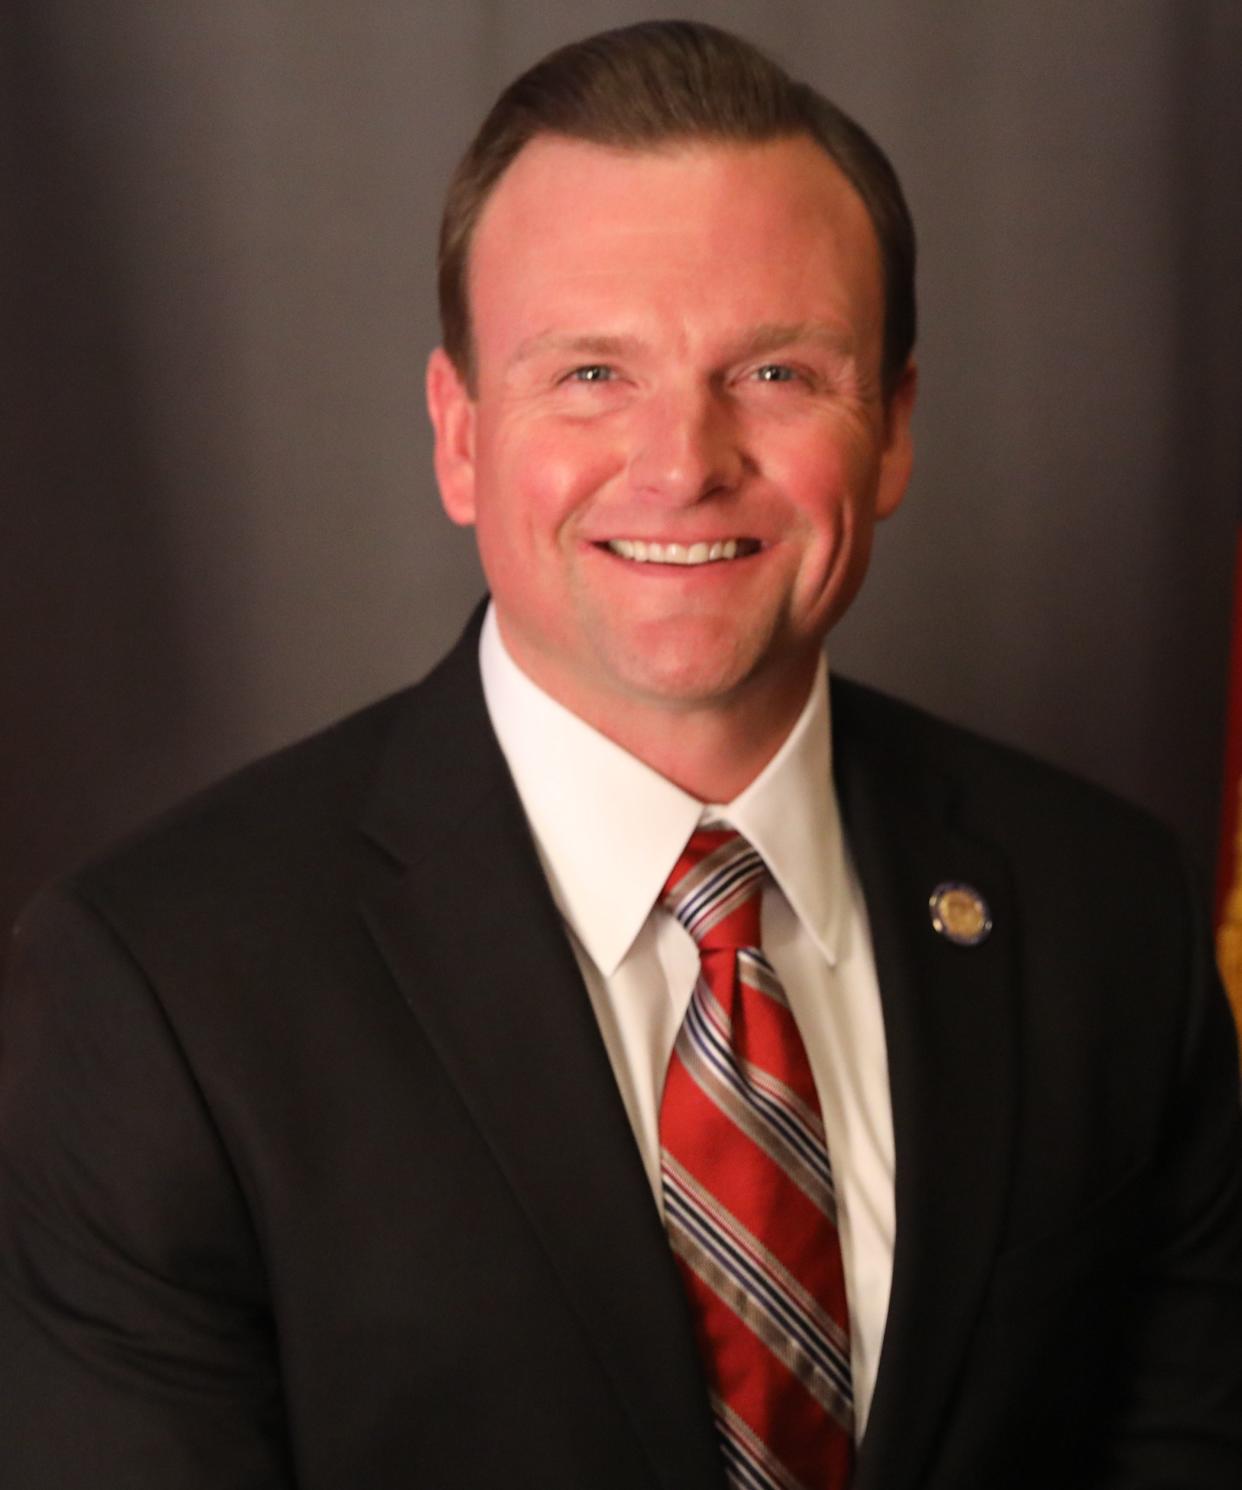 Georgia state Senator Clint Dixon